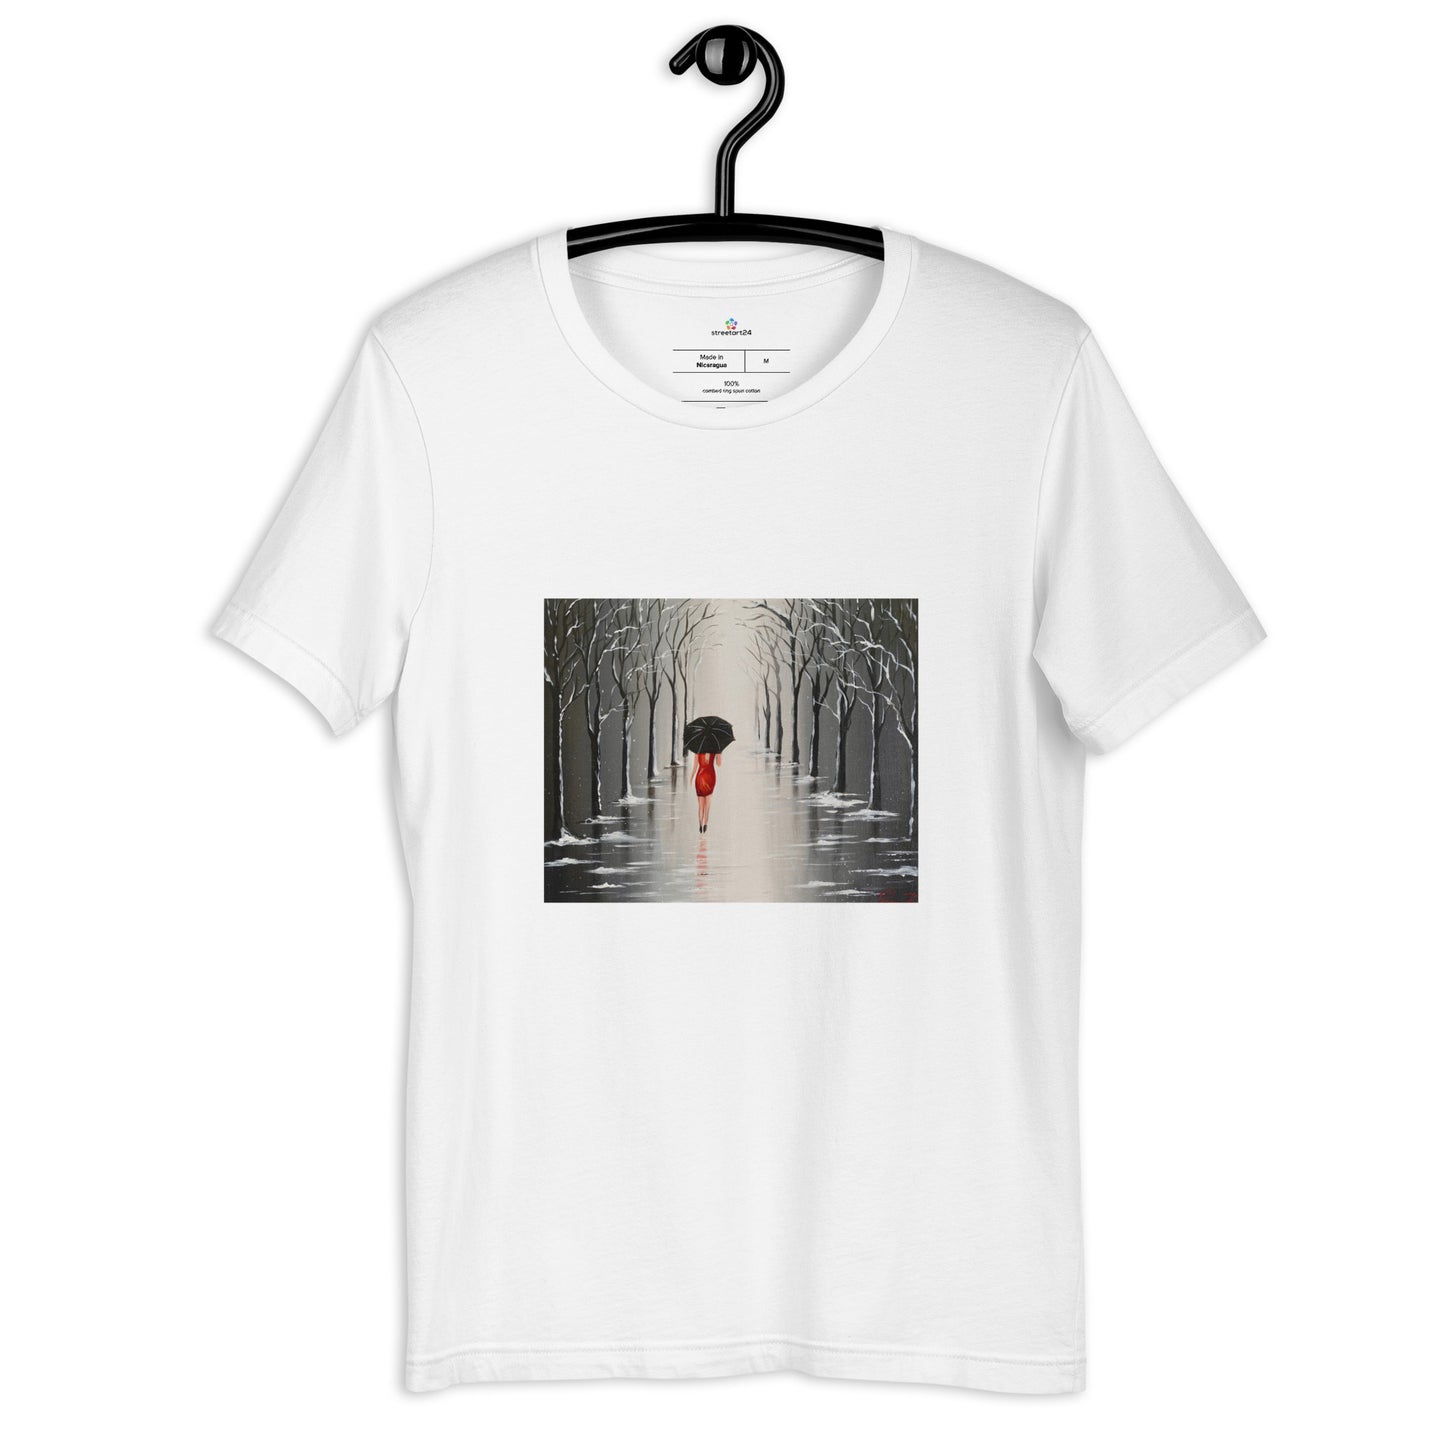 Camiseta de manga corta unisex "Paseando bajo la lluvia"